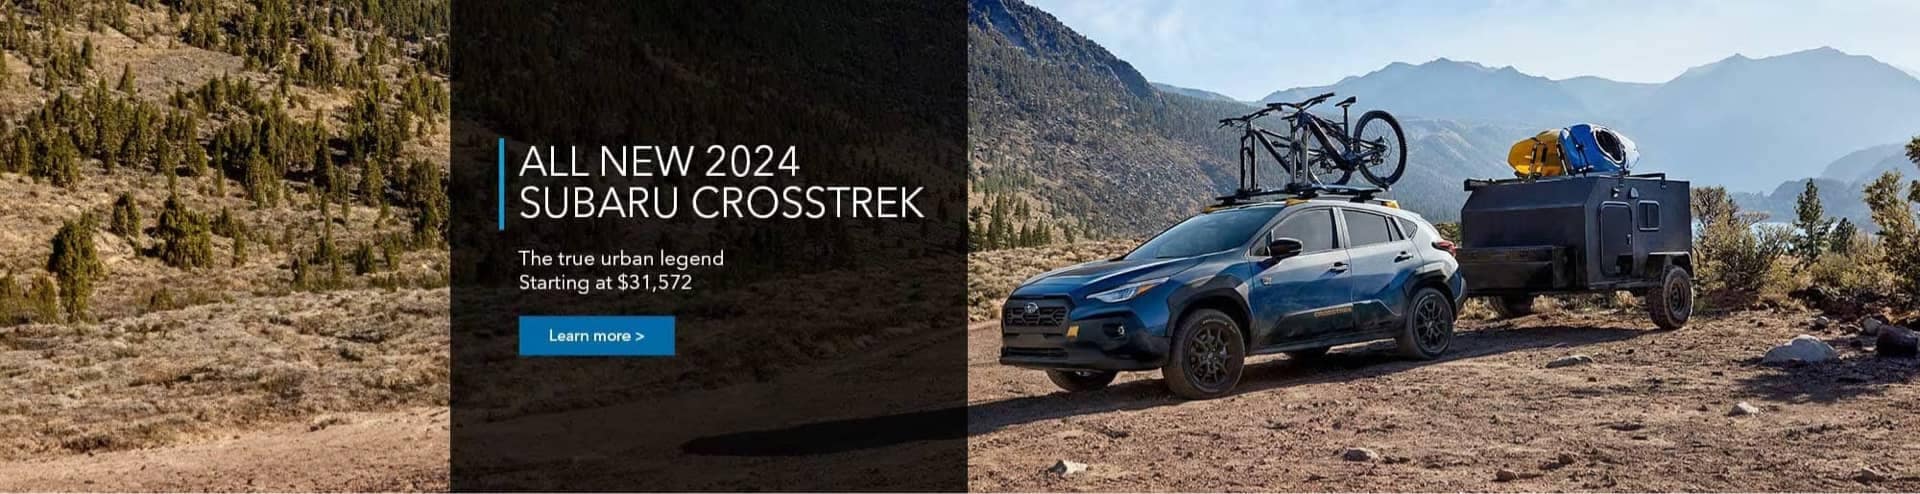 All New 2024 Subaru Crosstrek